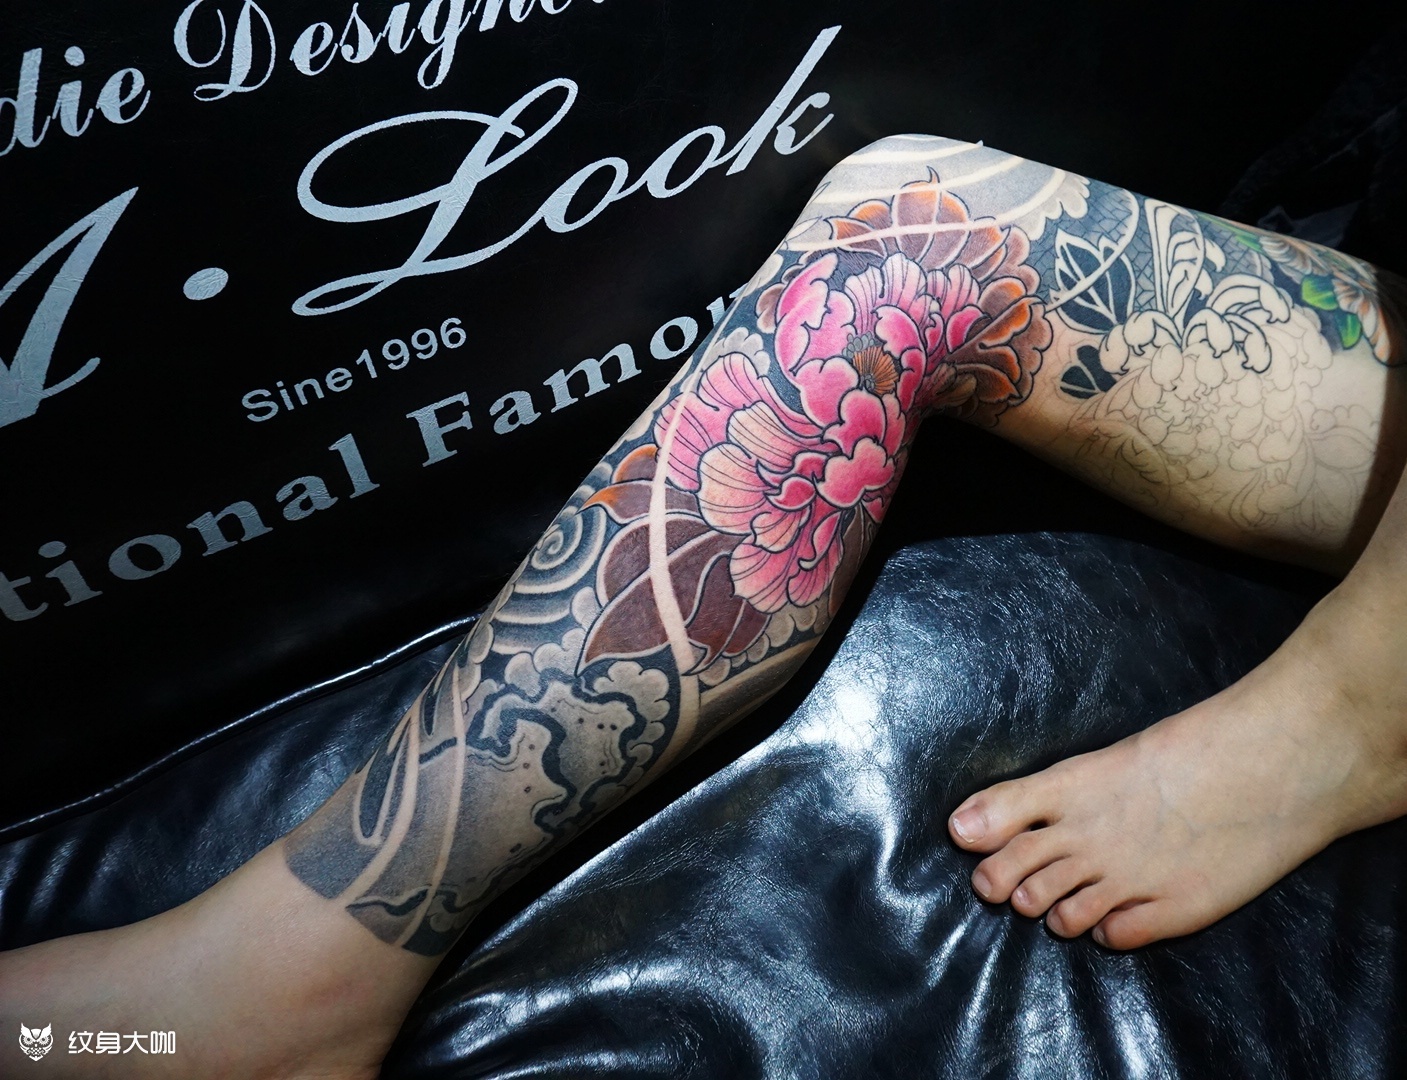 大腿彩色玫瑰花纹身图案